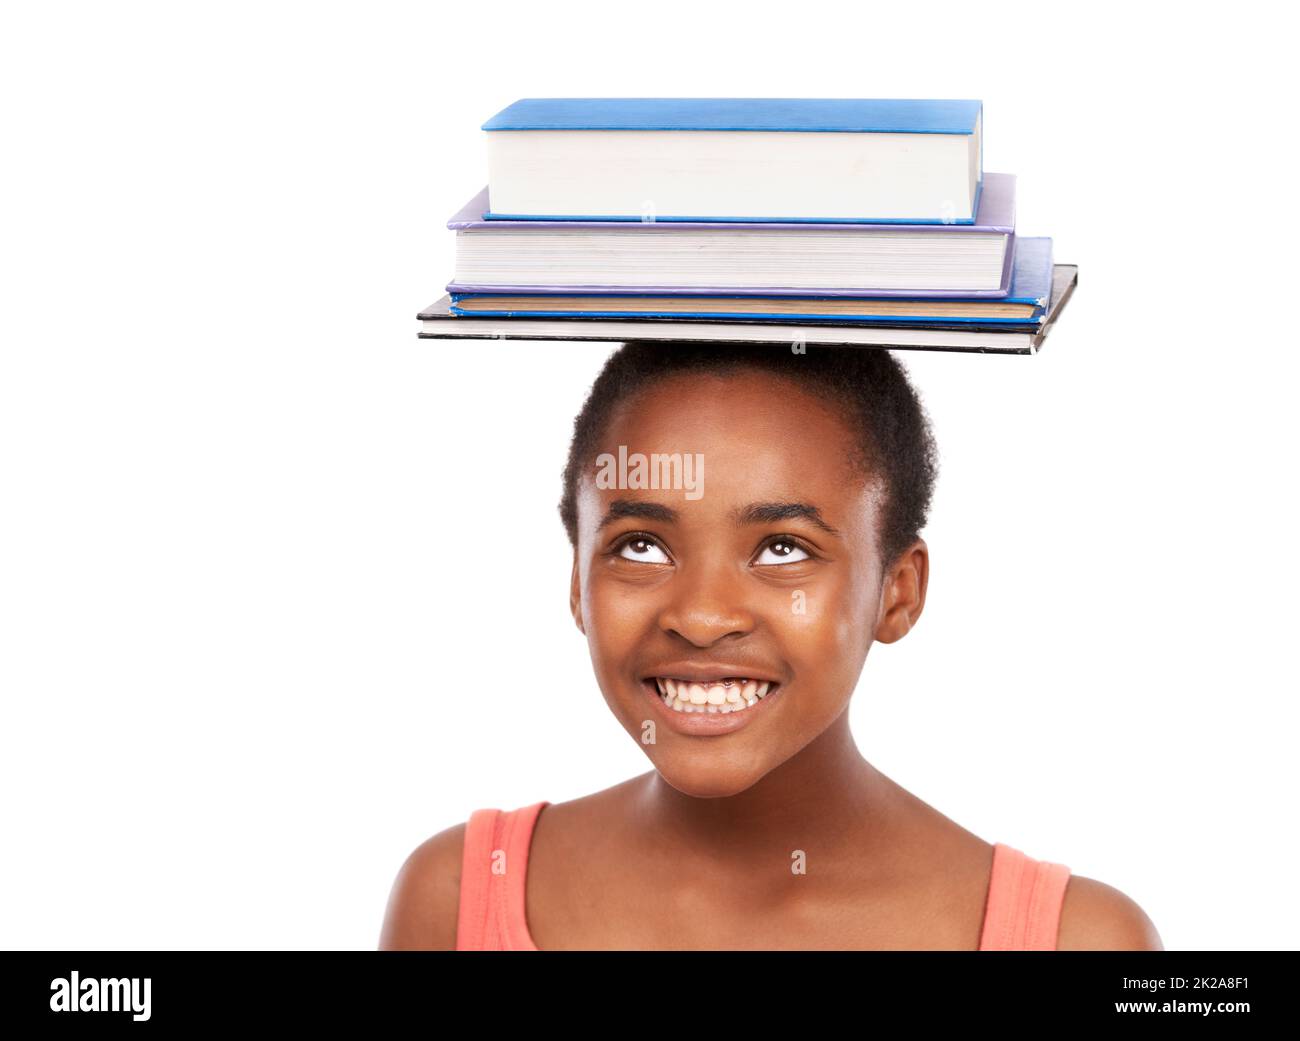 Ich perfektioniere mein Gleichgewicht. Studioaufnahme eines jungen afrikanischen Mädchens, das auf weißem Kopf Bücher balanciert. Stockfoto